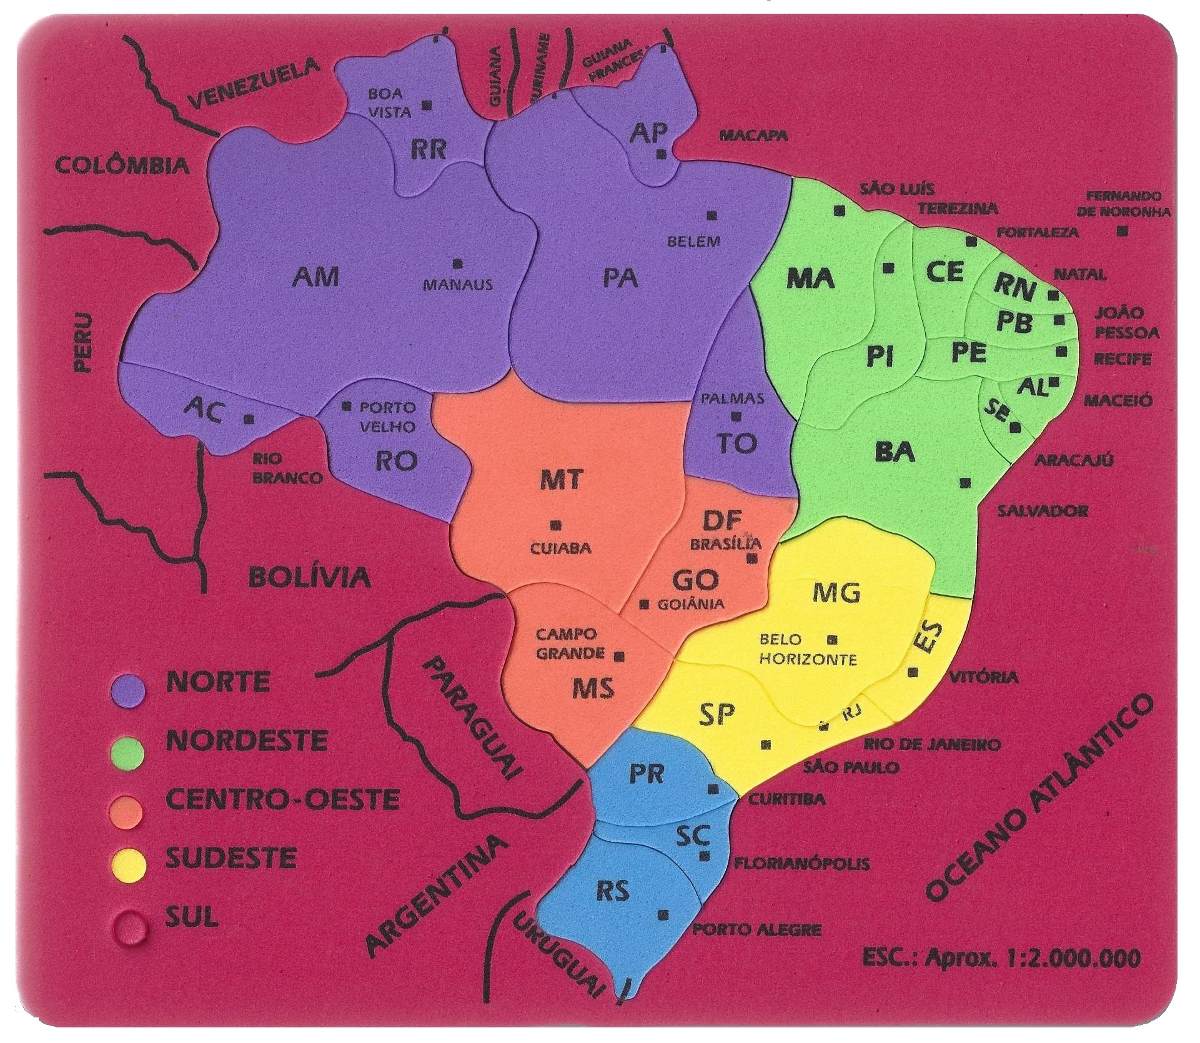 Quebra Cabeca Mapa Do Brasil 41x41cm No Elo7 Quebra Cabeca Images